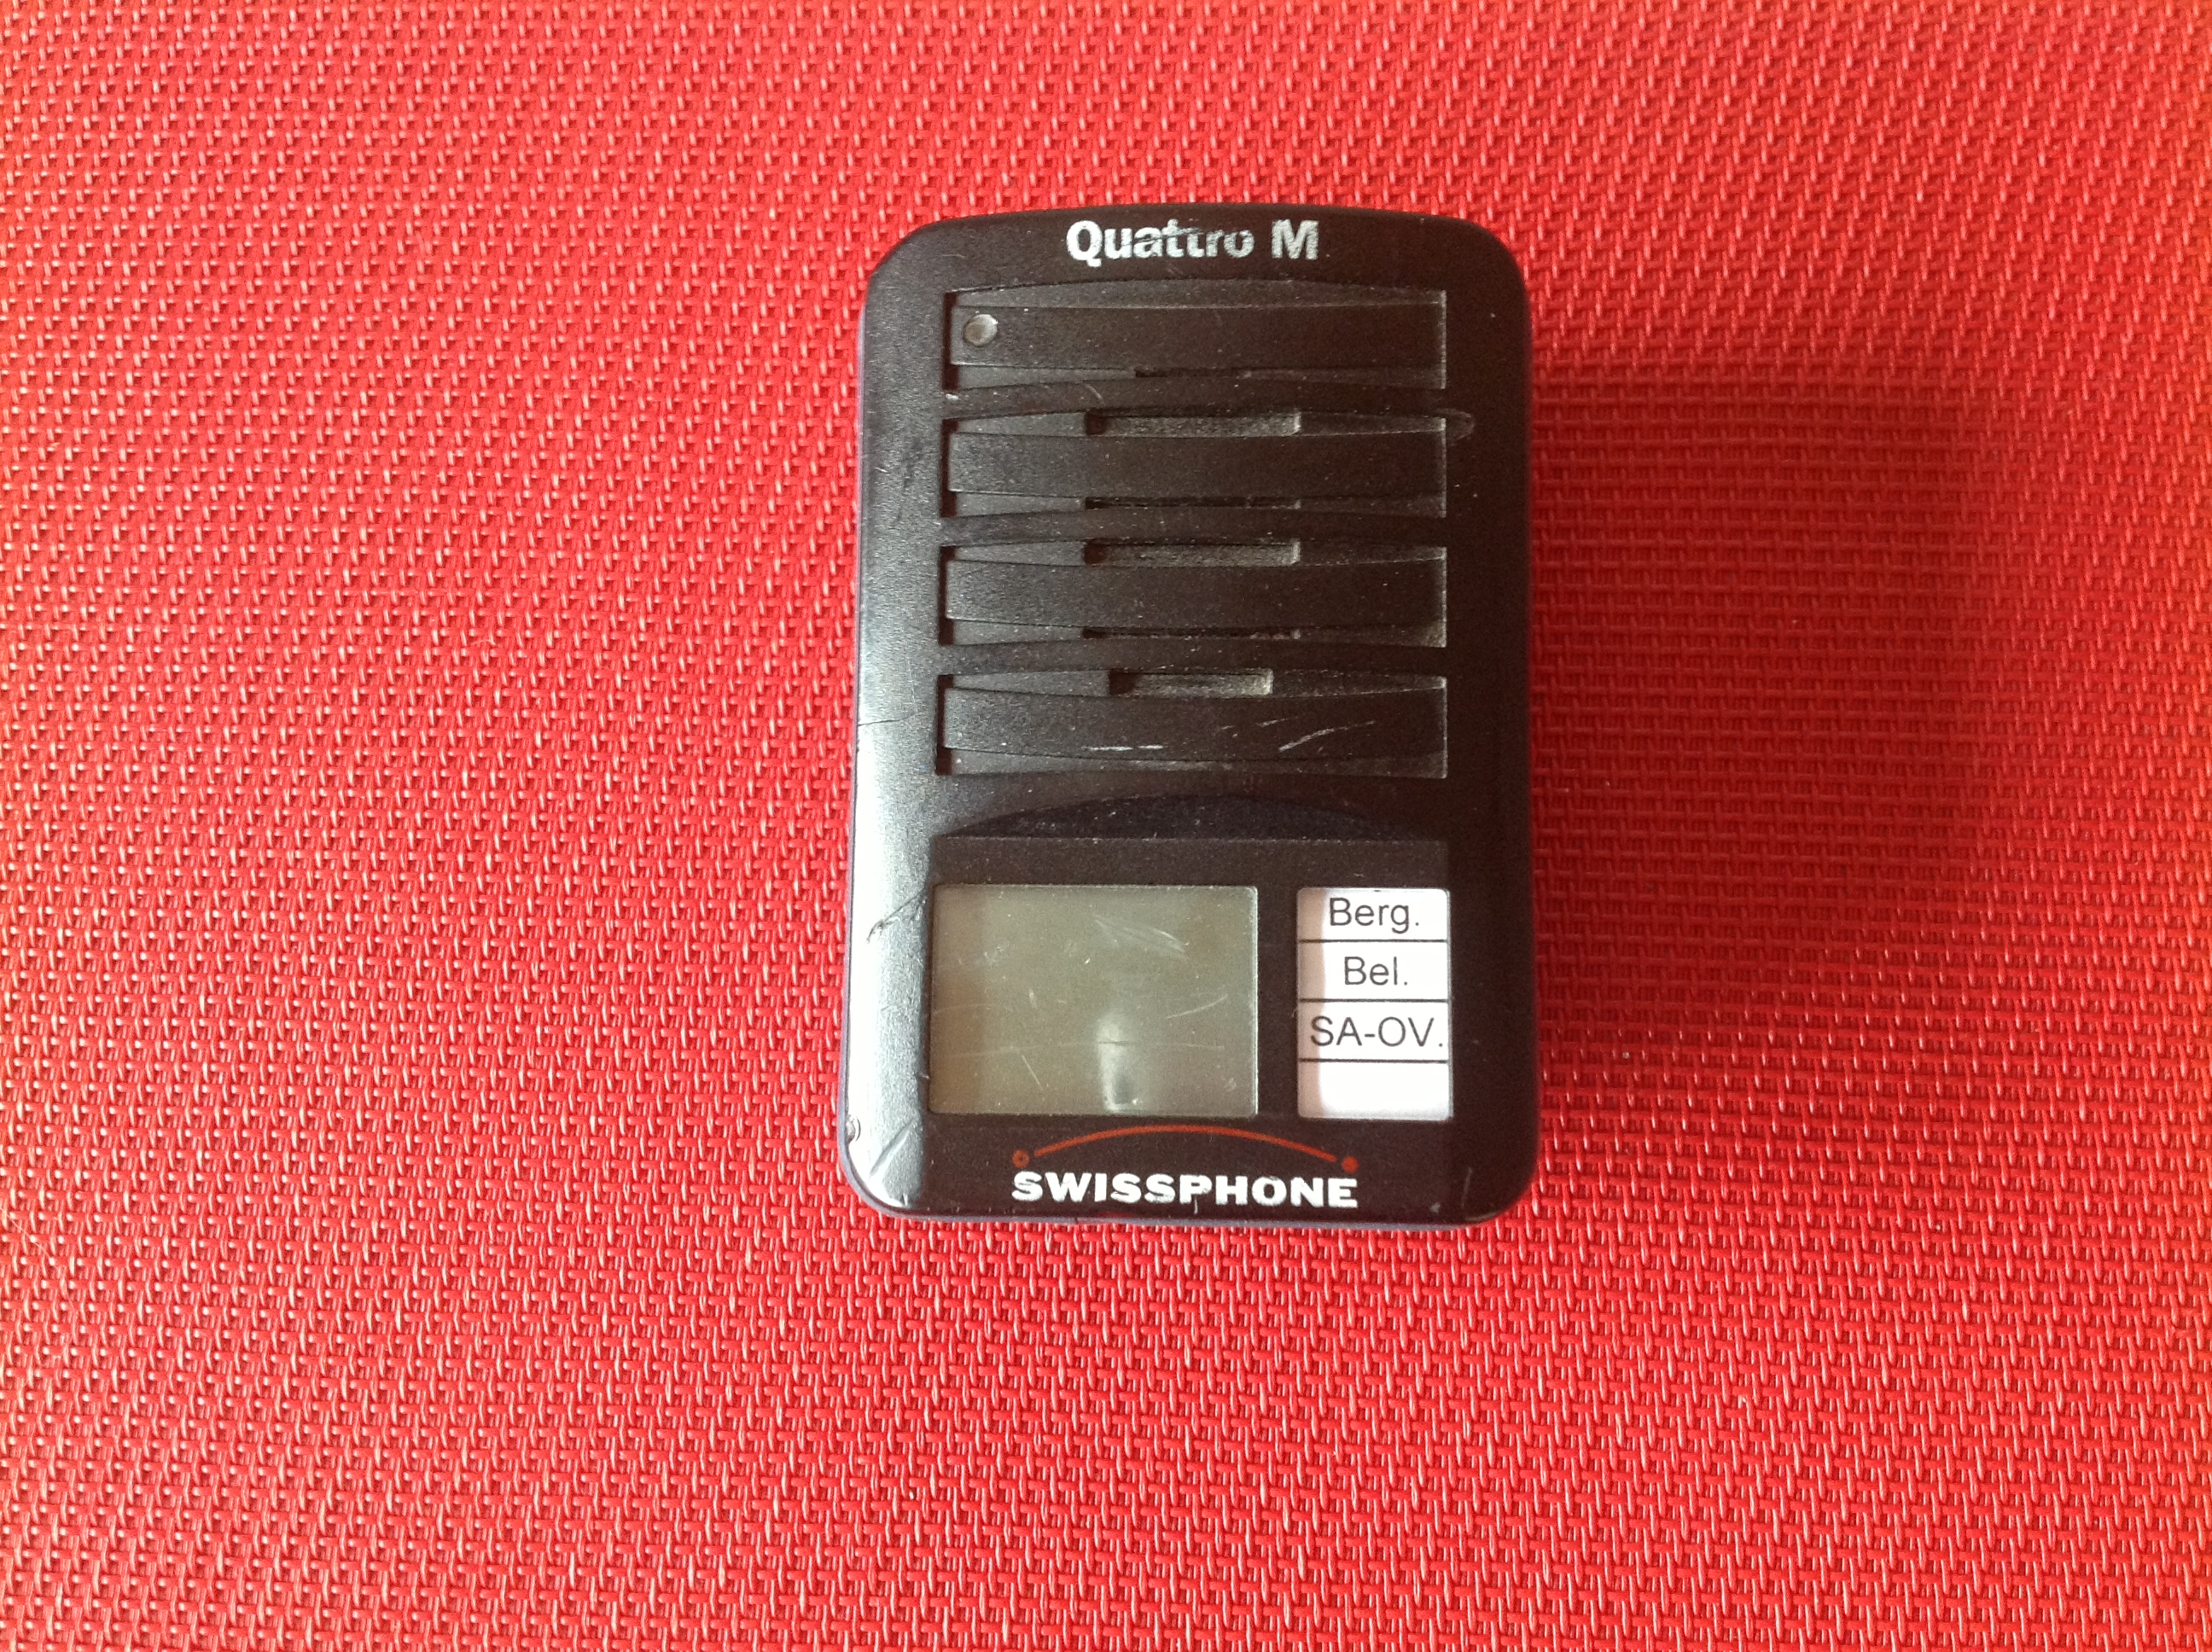 Meldeempfänger Swissphone Quattro M